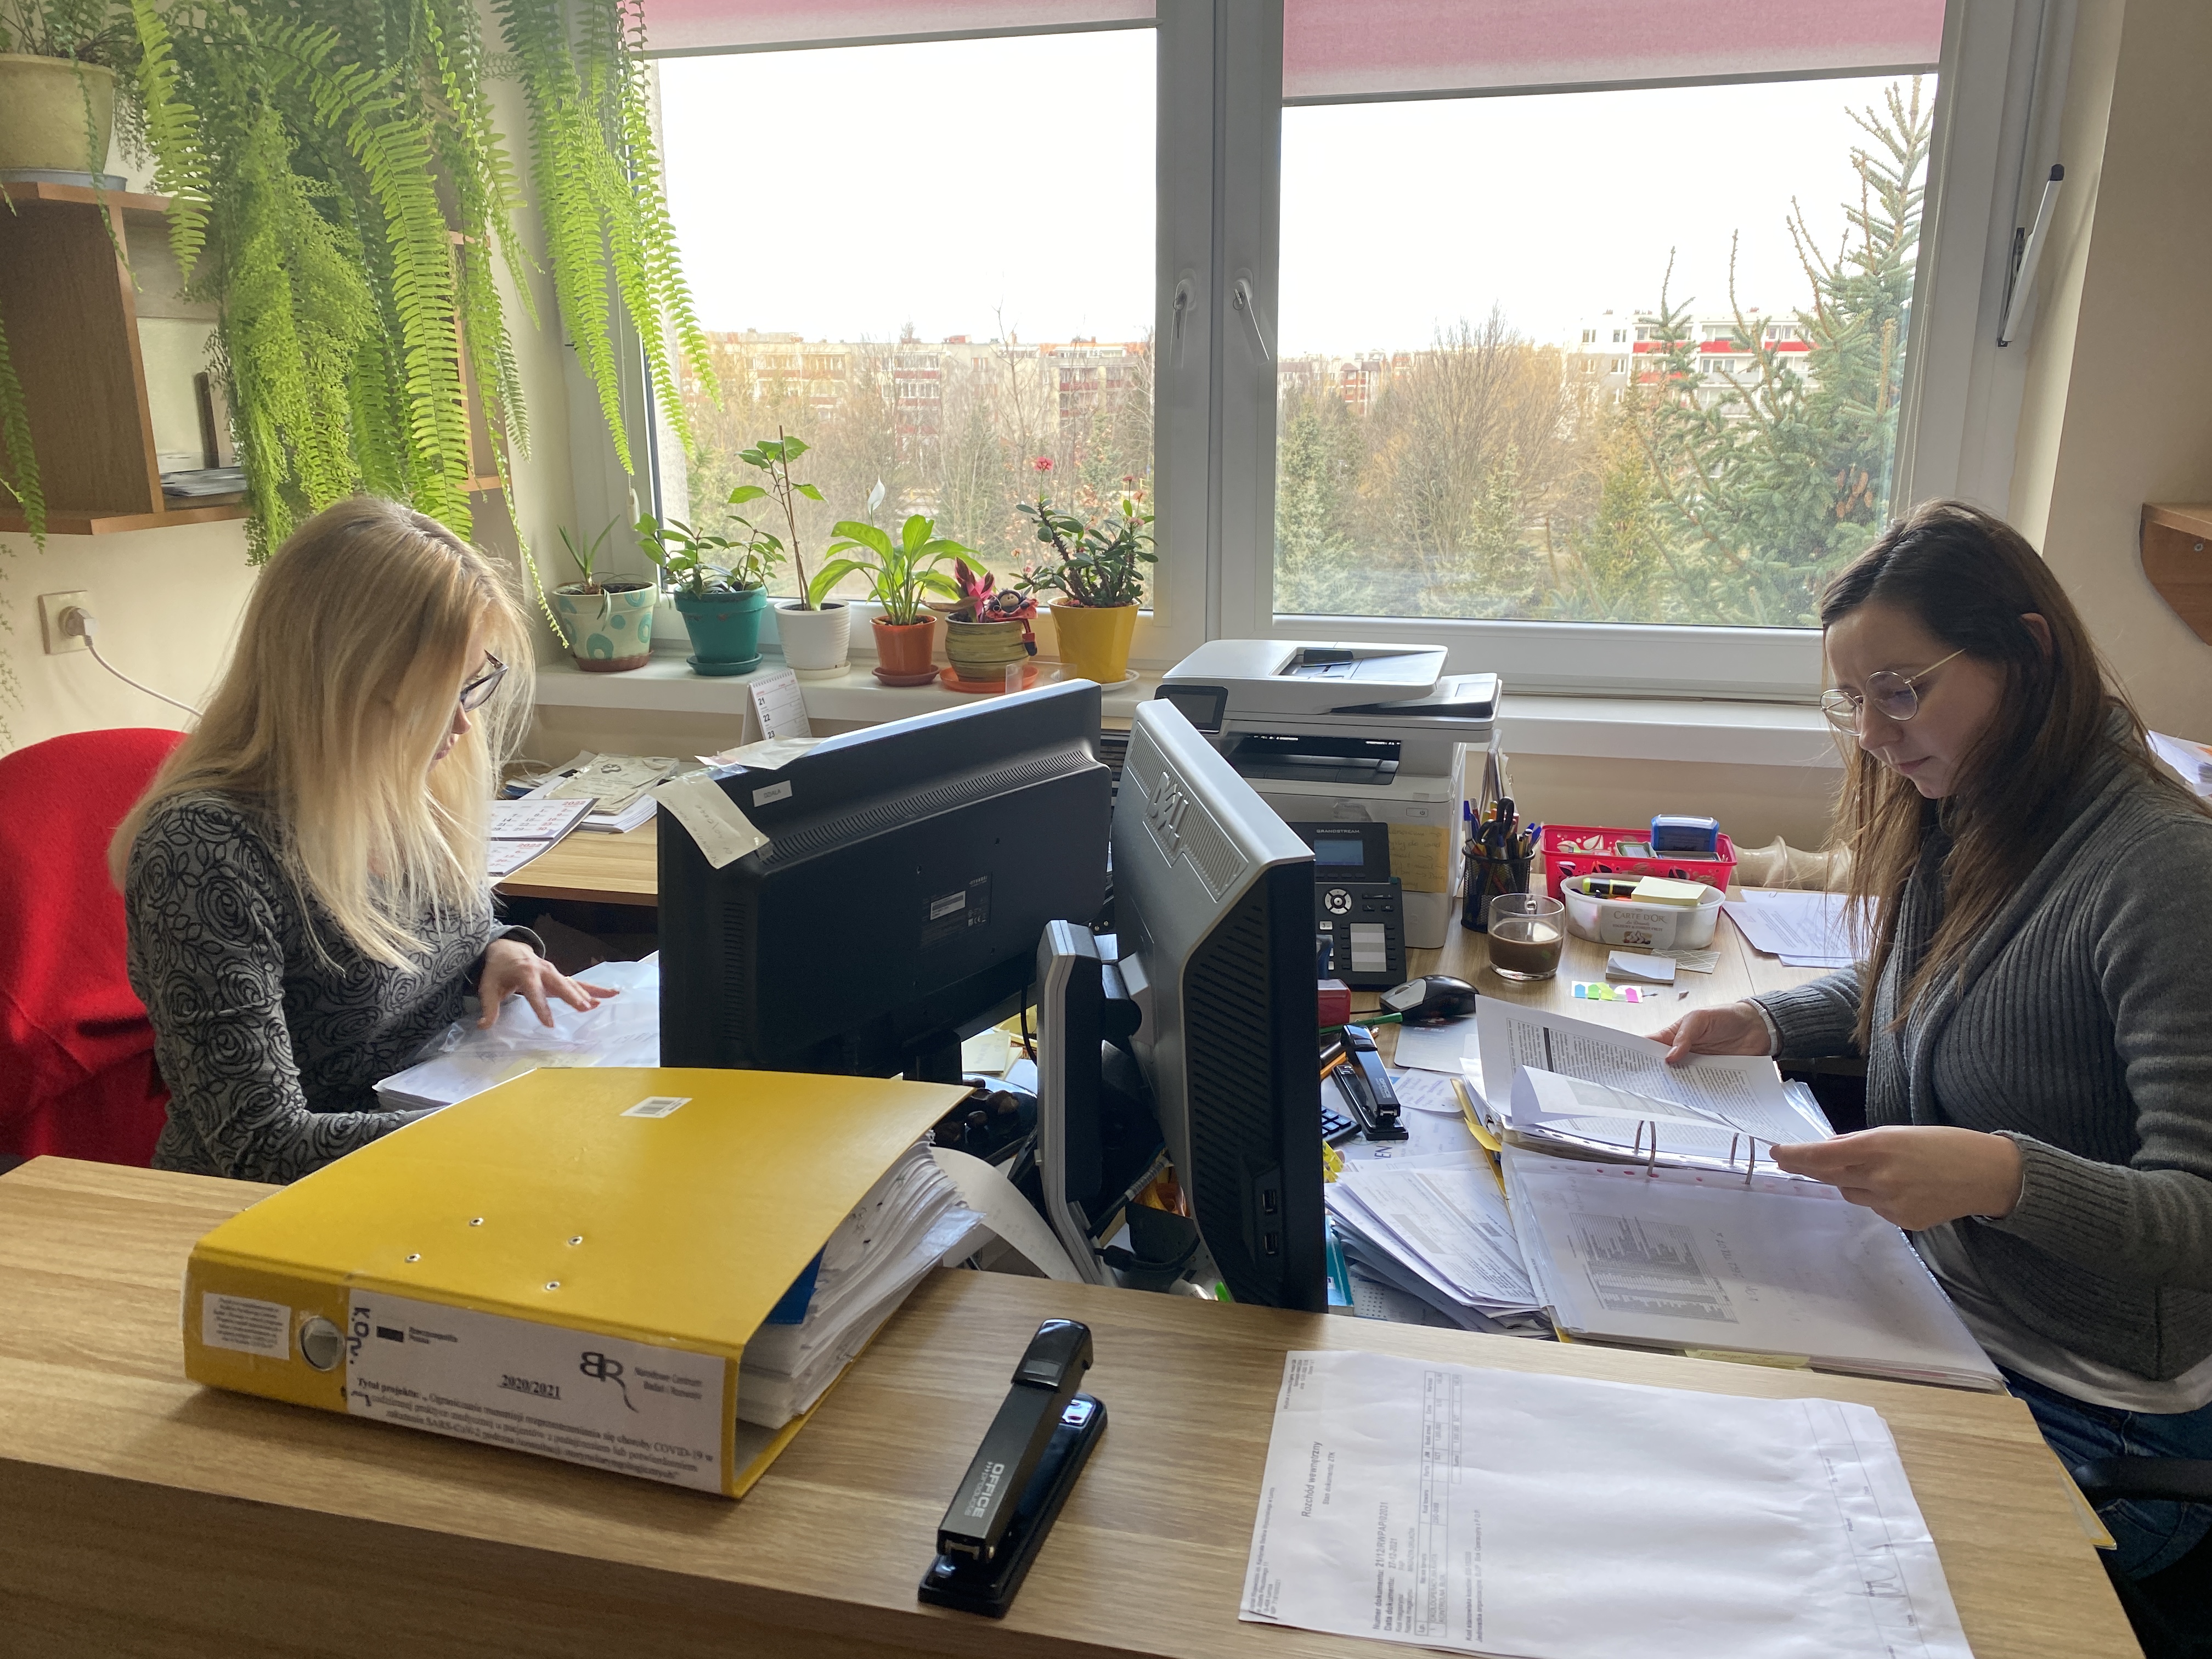 Rozliczanie finansowe projektu, pracownicy administracyjni działu księgowości, od lewej: Anna Chludzińska, Marlena Wierzbowska